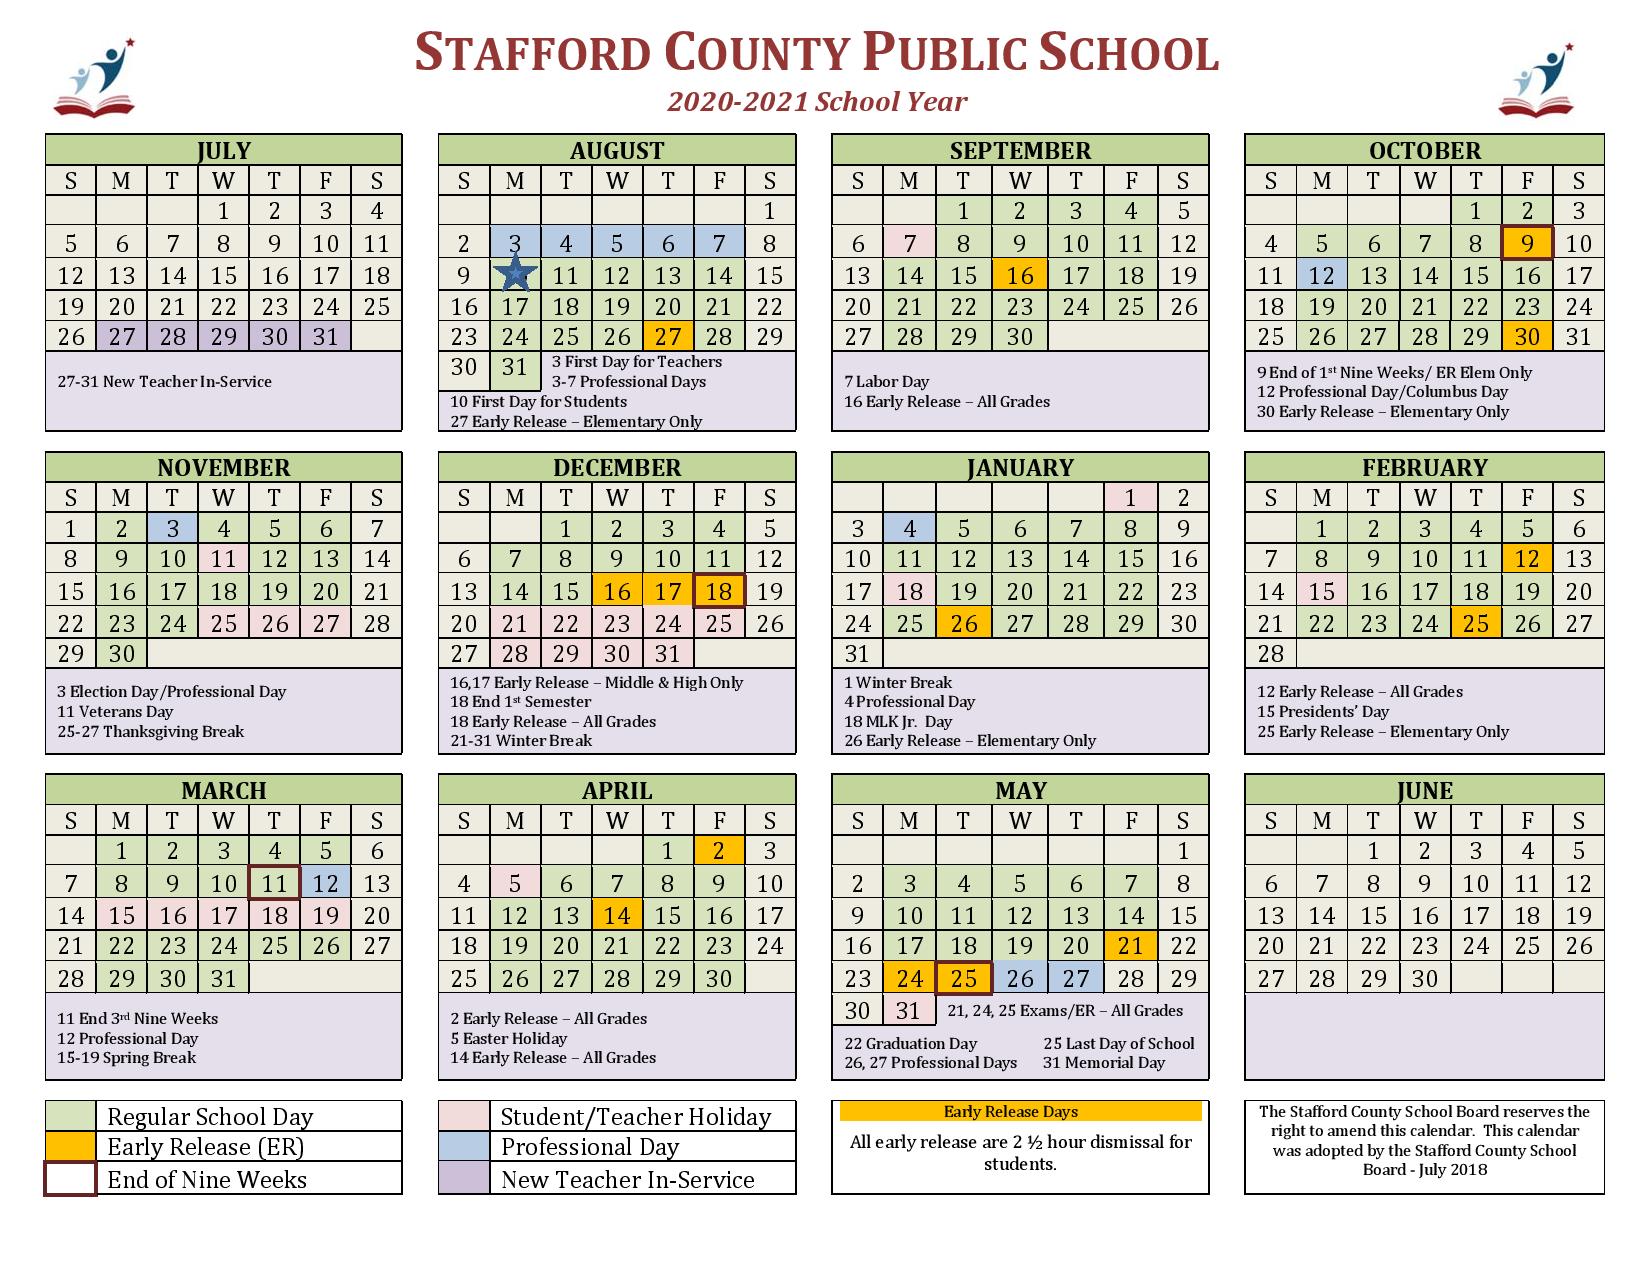 Stafford County Public Schools Calendar 20202021